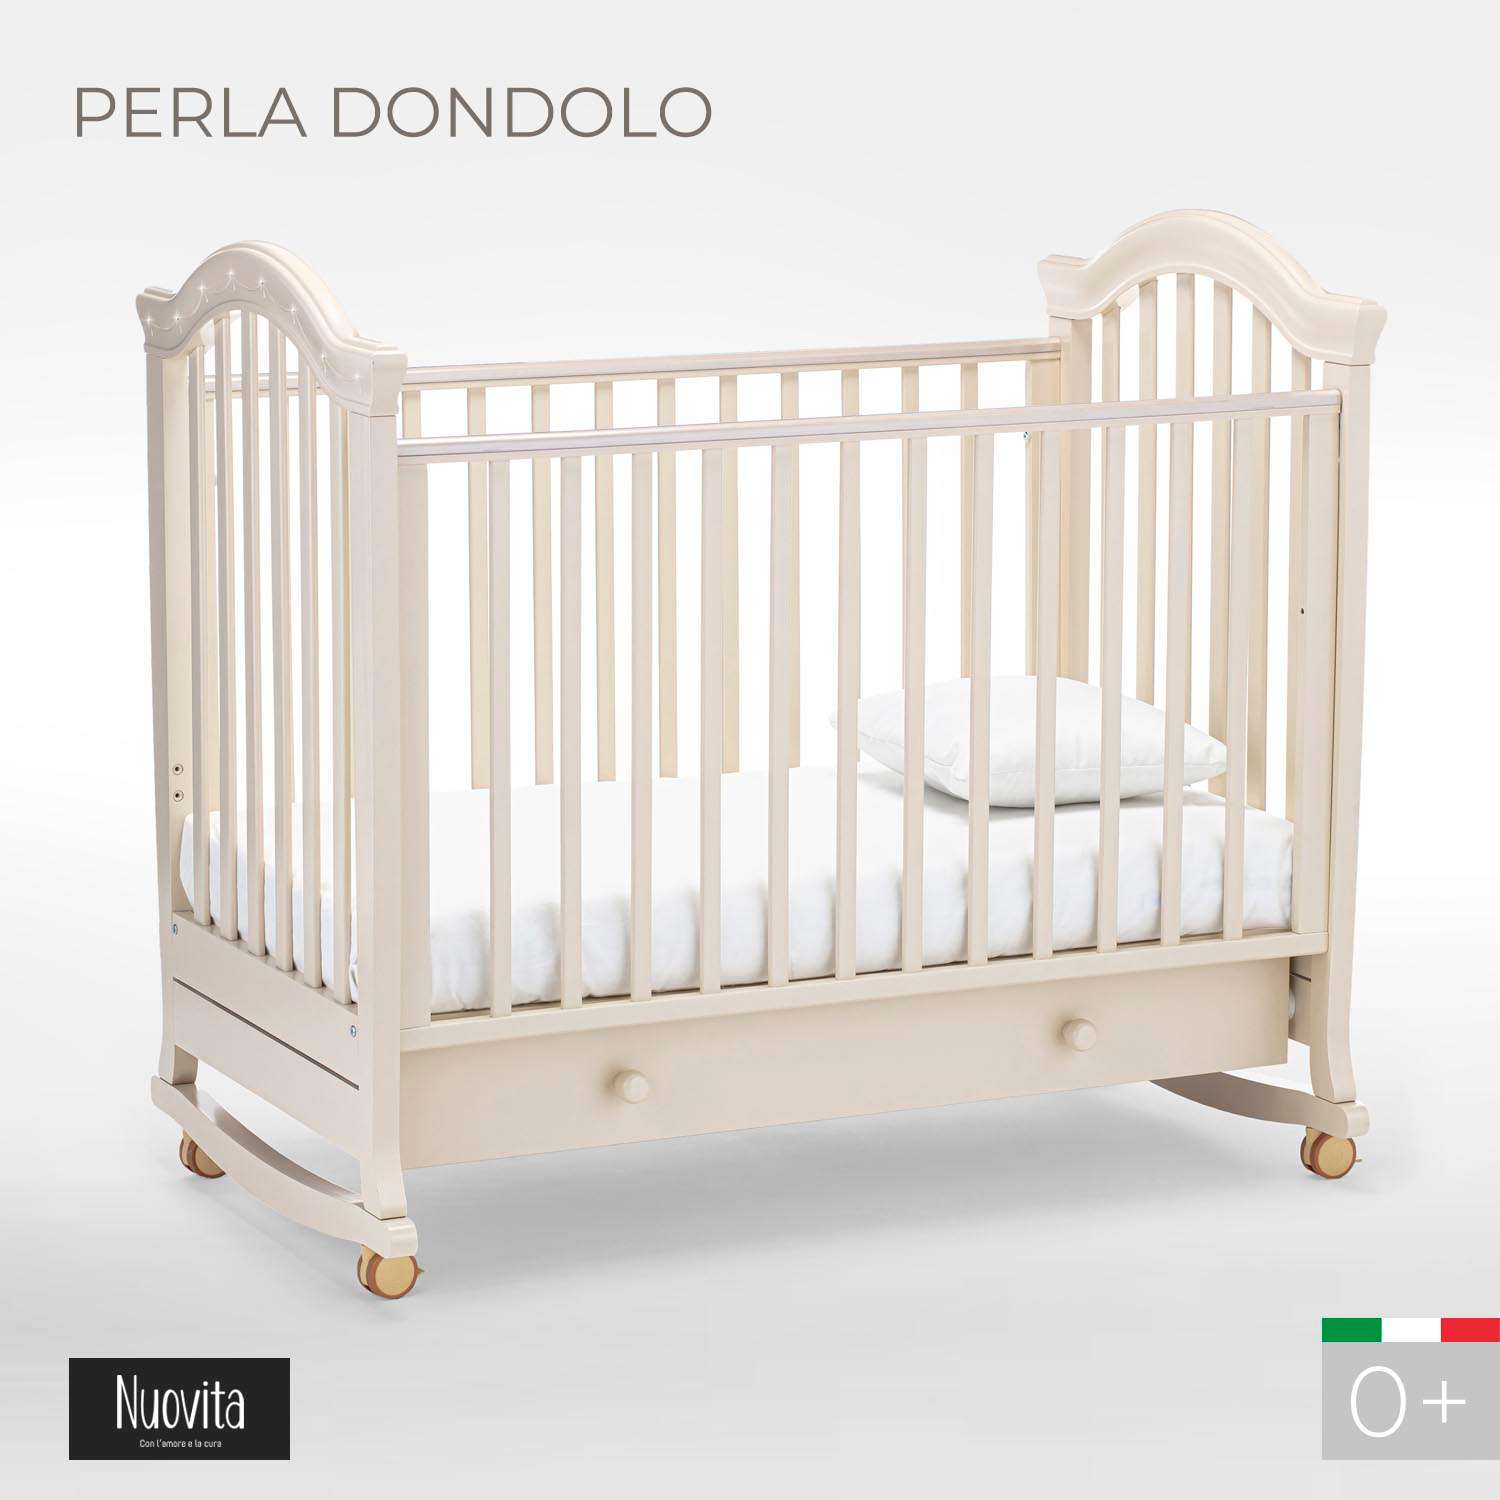 Детская кроватка Nuovita Perla Dondolo прямоугольная, без маятника (слоновая кость) - фото 2